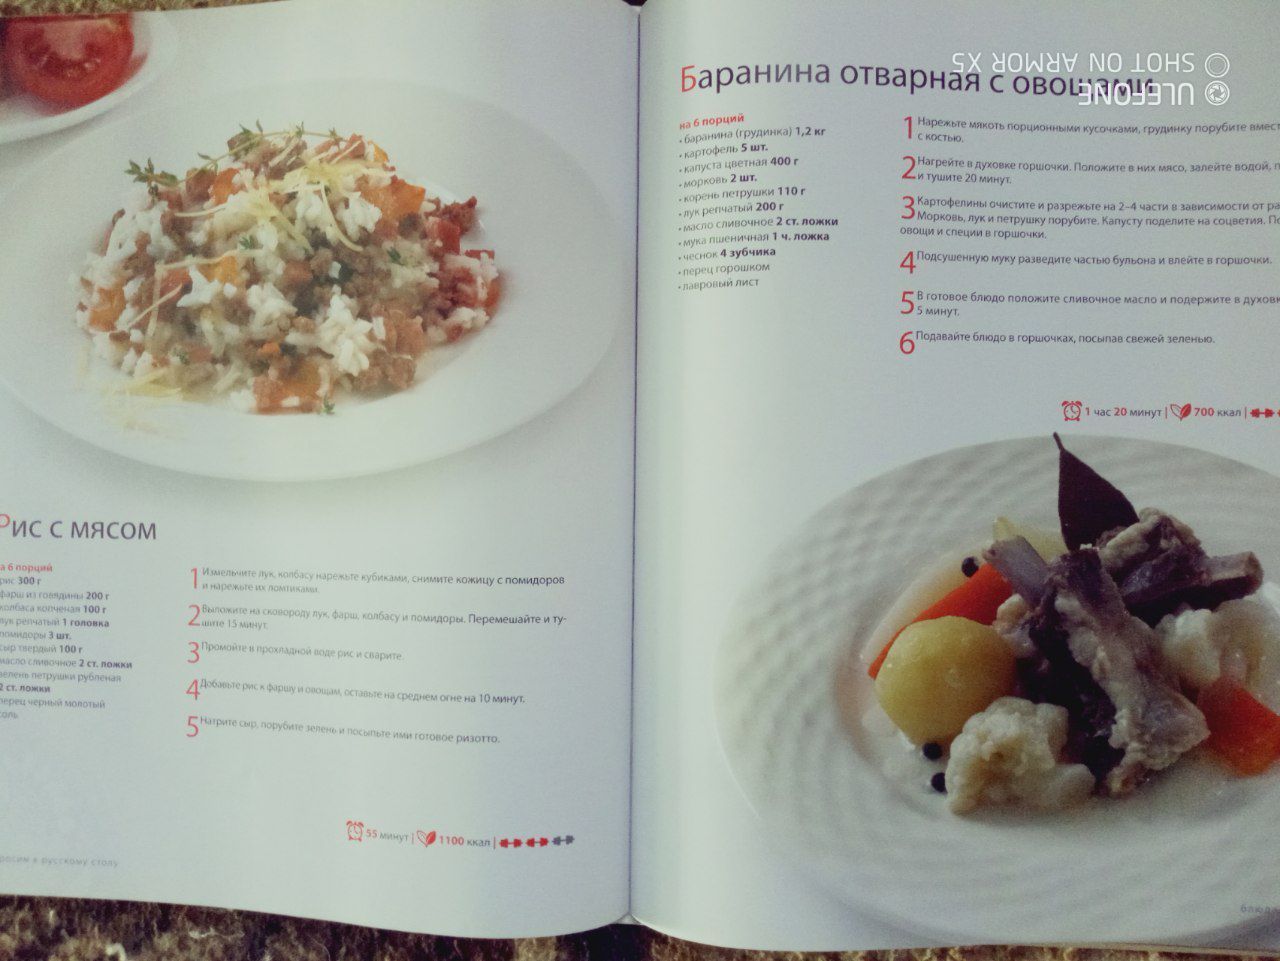 Продаётся книга, рецепты русской кухни.